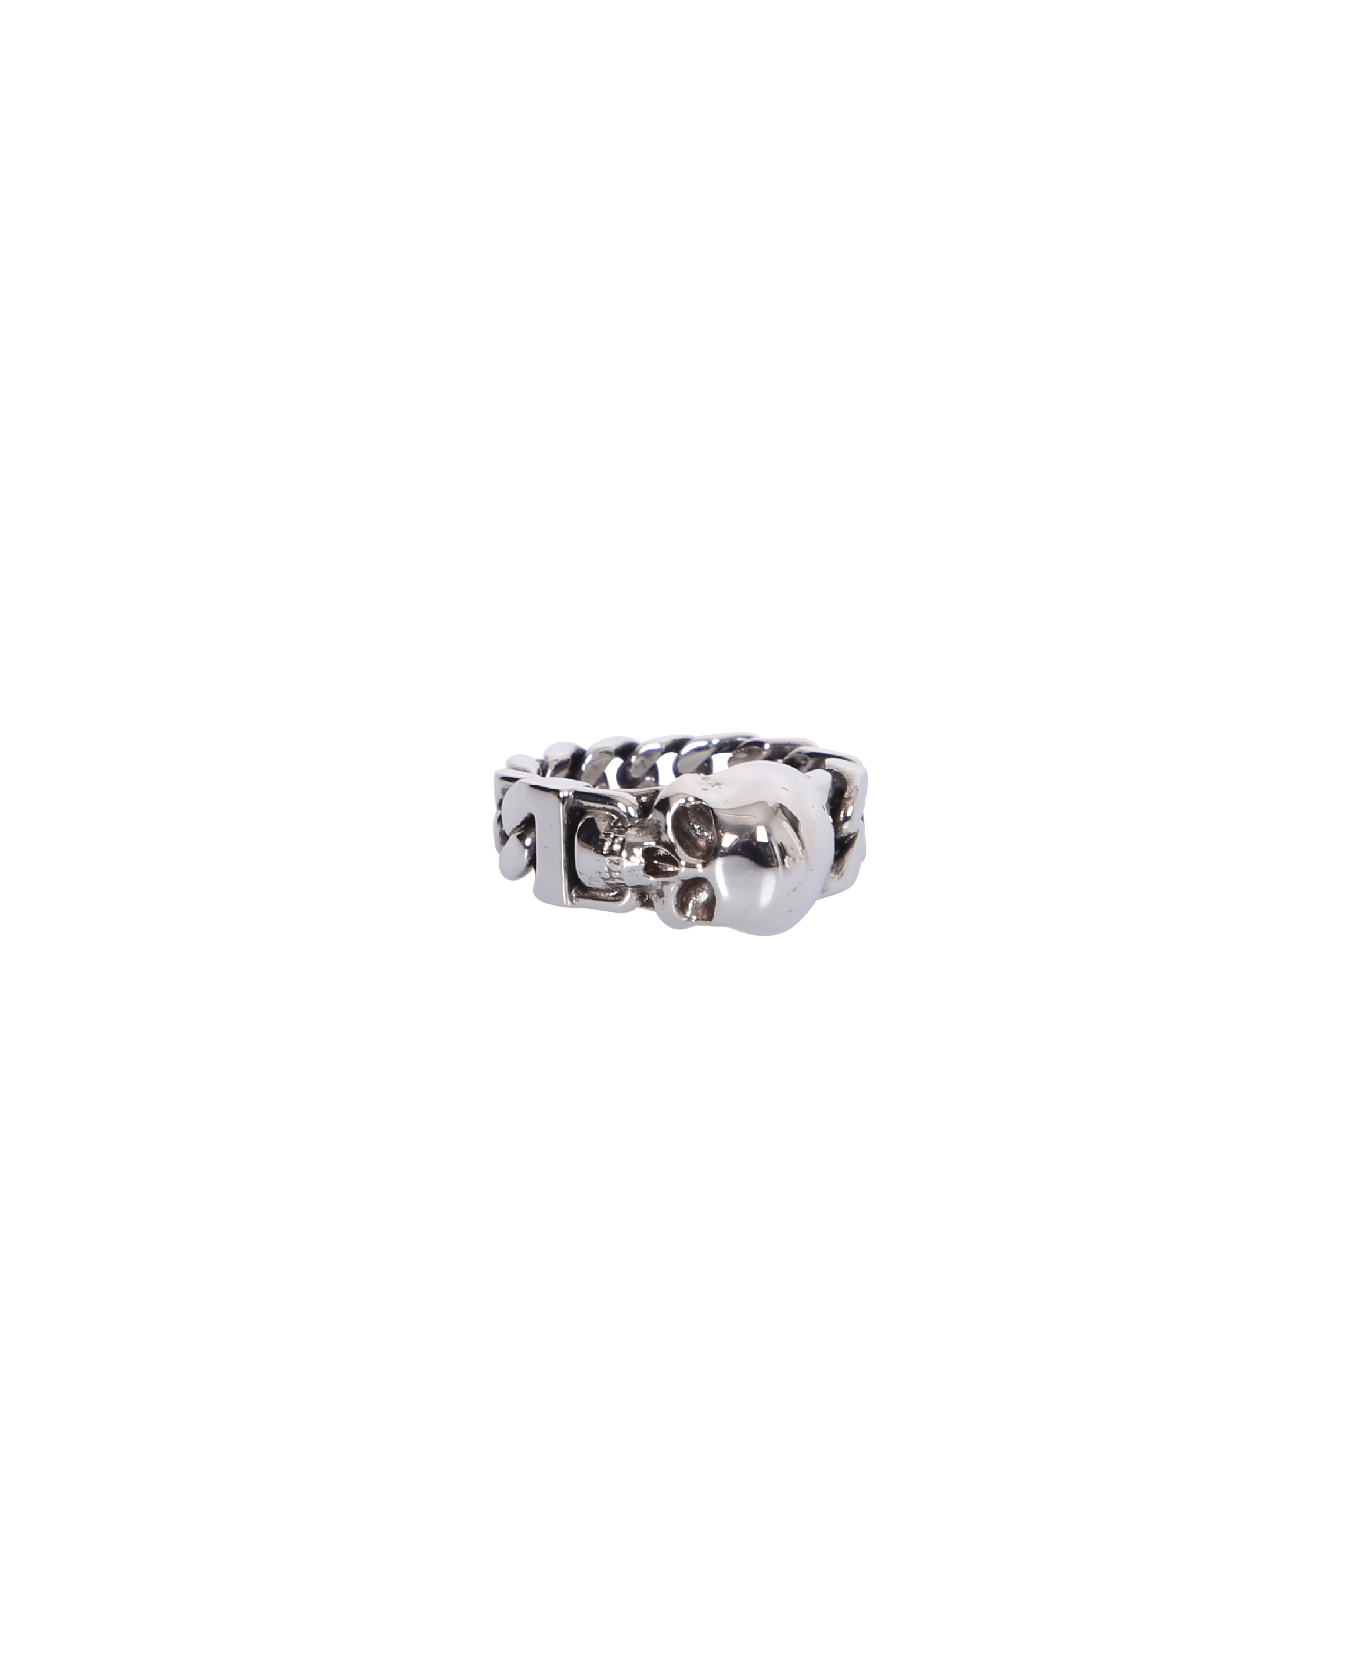 Alexander McQueen Silver Skull Ring - Metallic